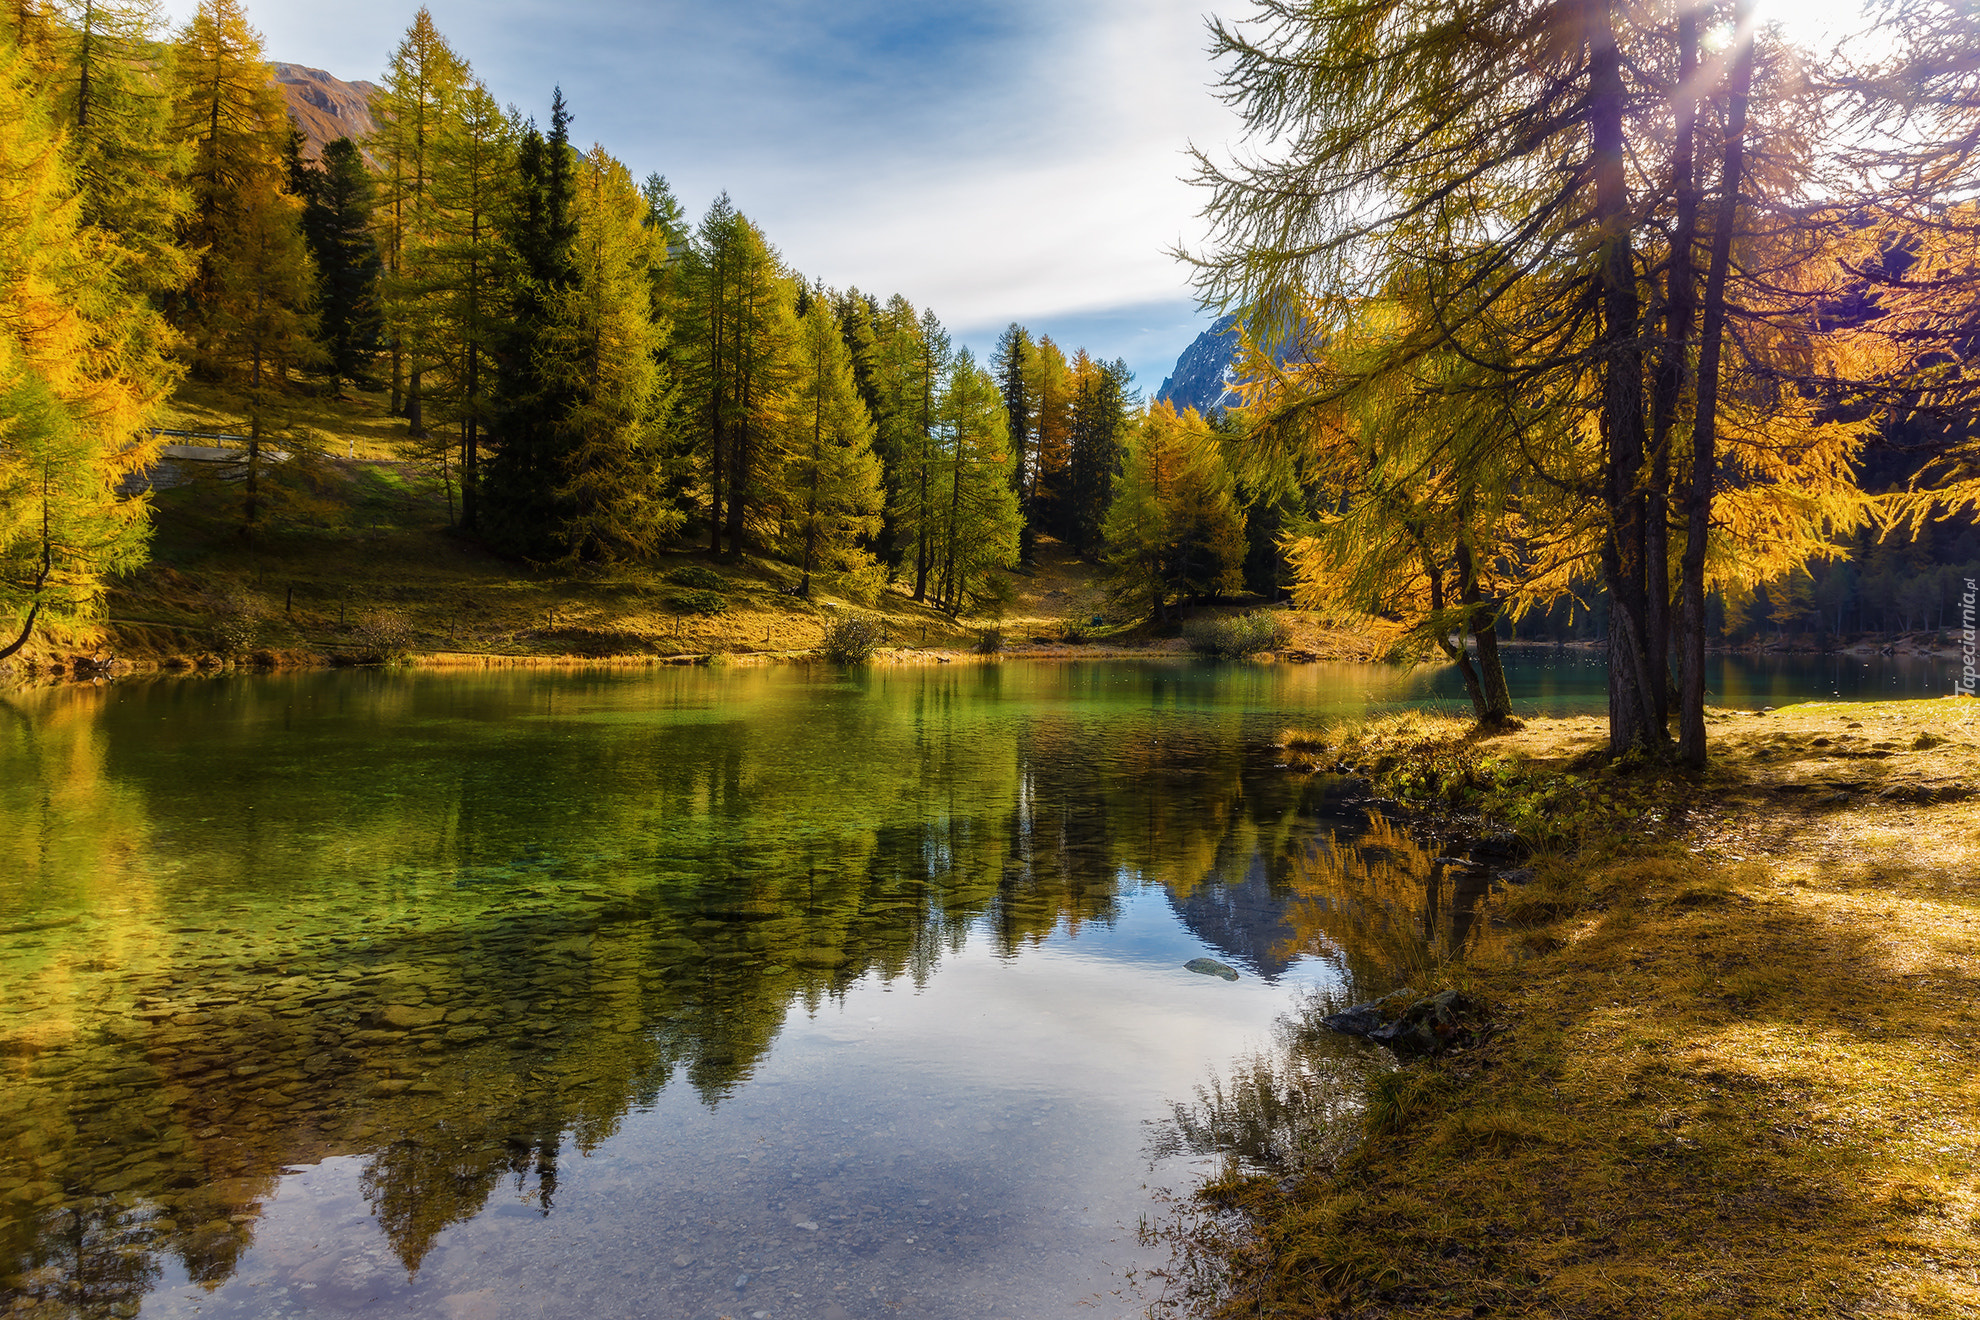 Jezioro Lai da Palpuogna, Jesień, Drzewa, Park przyrodniczy Ela, Kanton Gryzonia, Szwajcaria